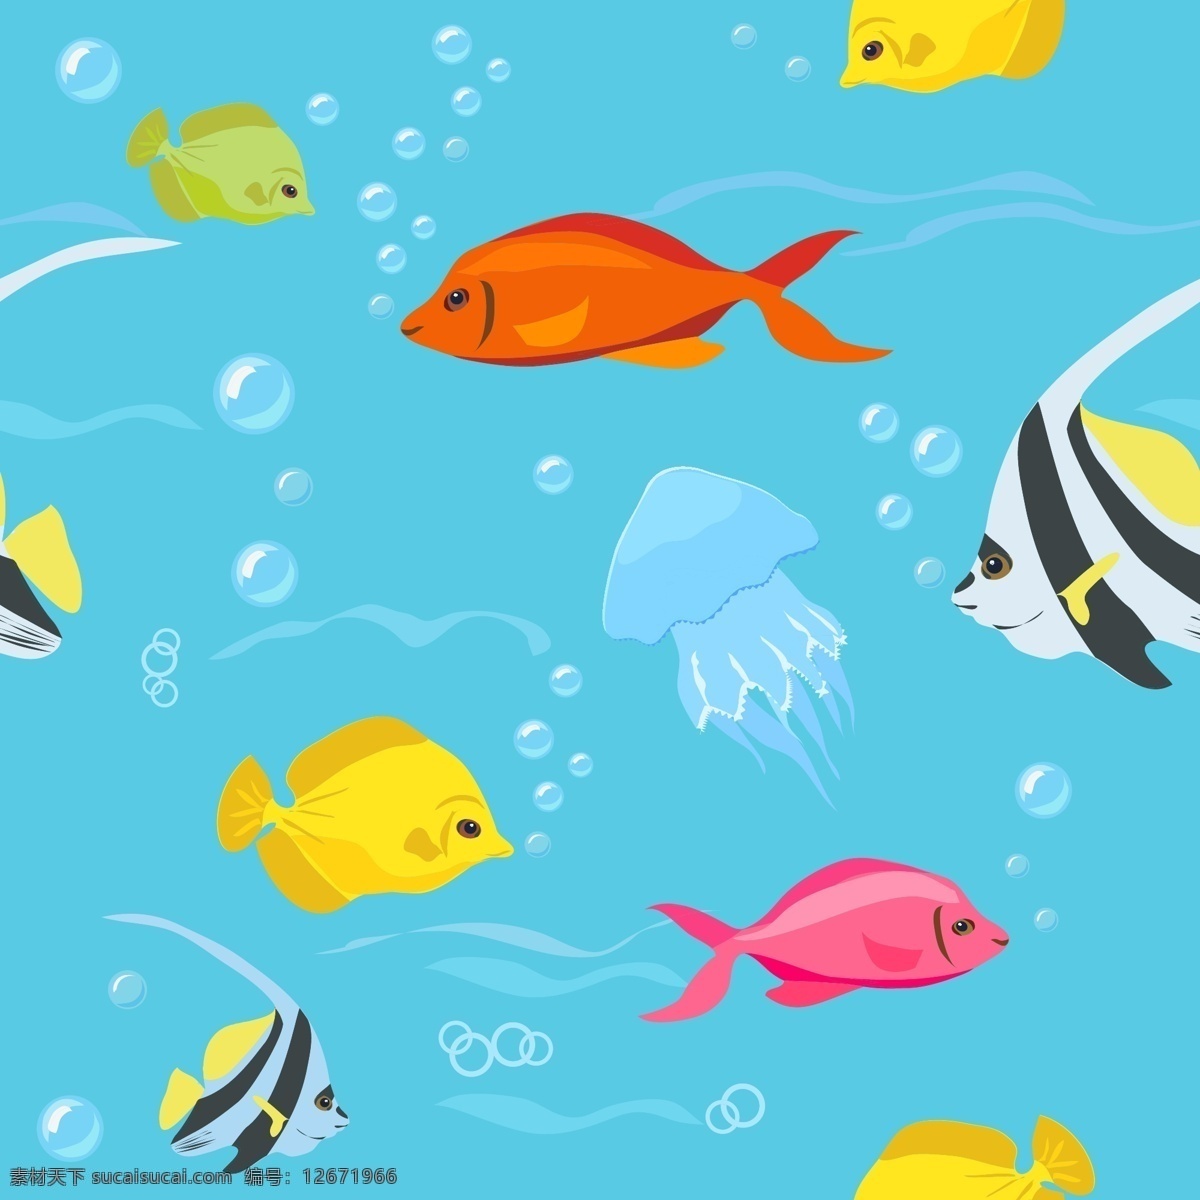 海洋生物 海鲜 卡通 卡通动物 气泡 生物世界 矢量素材 手绘 手绘动物 鱼 洋生物 水 鱼类 矢量